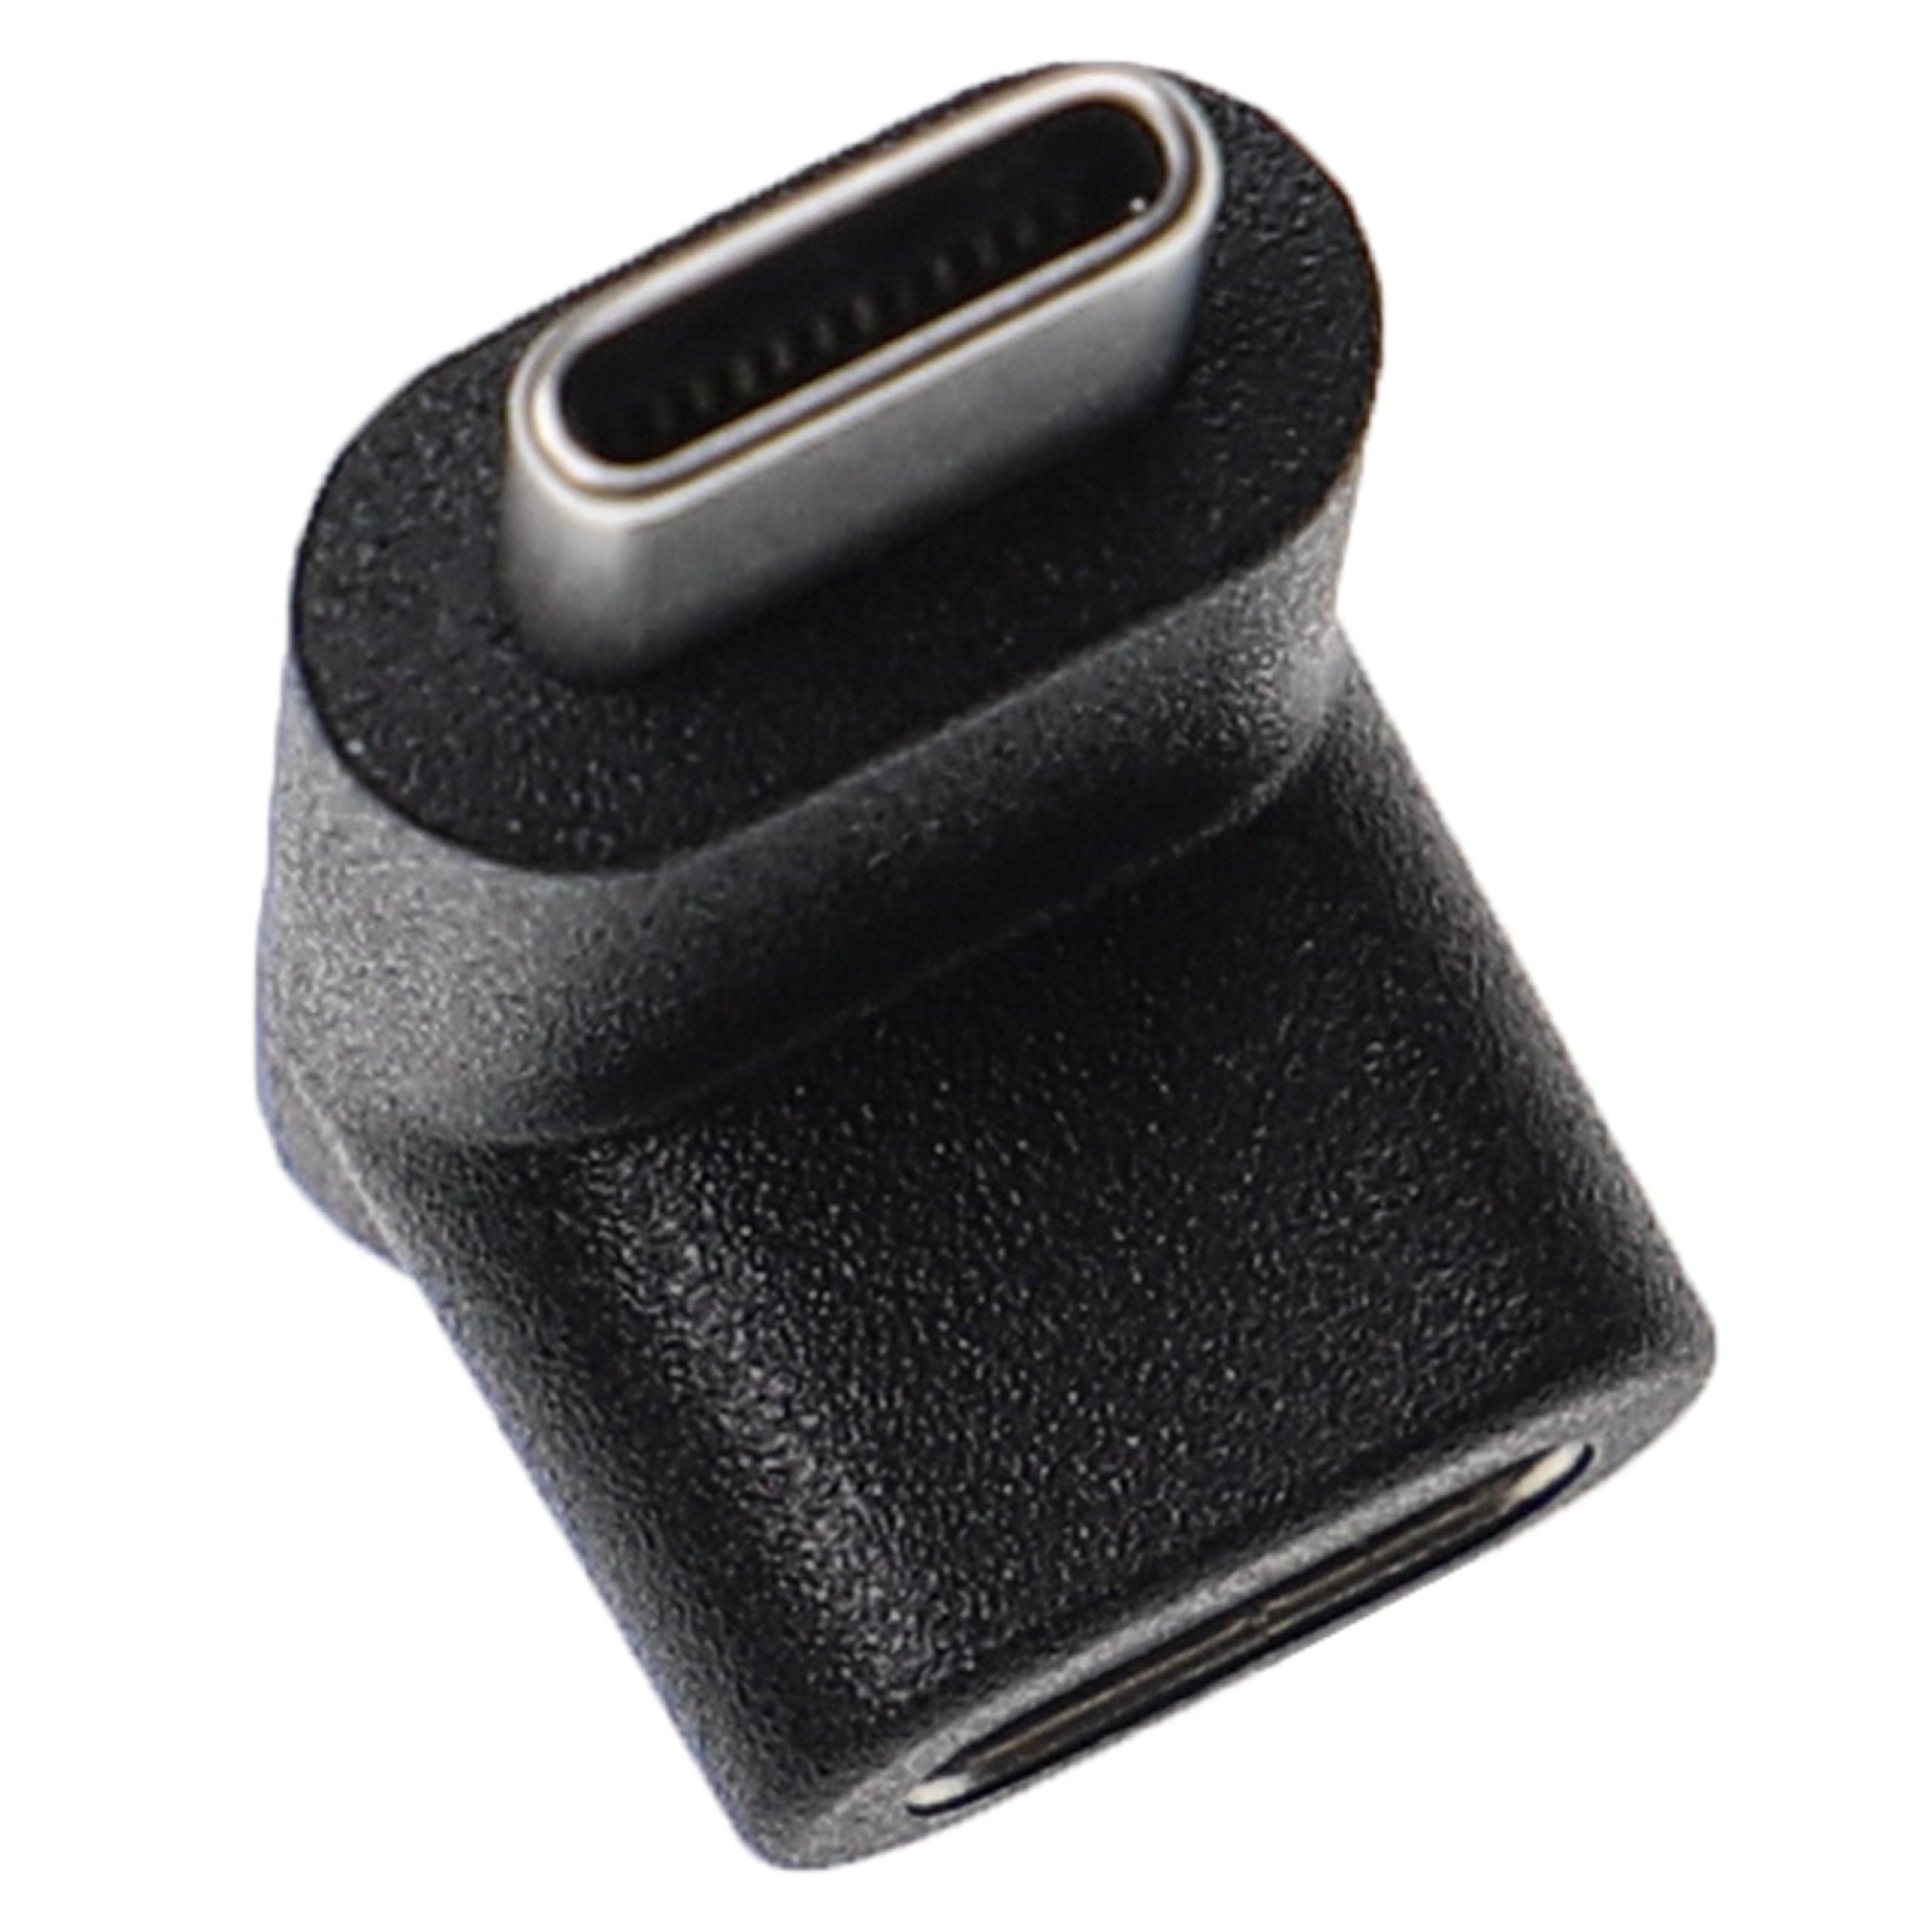 USB C Angle Adapter 90° Angled - Plug to Socket Adapter